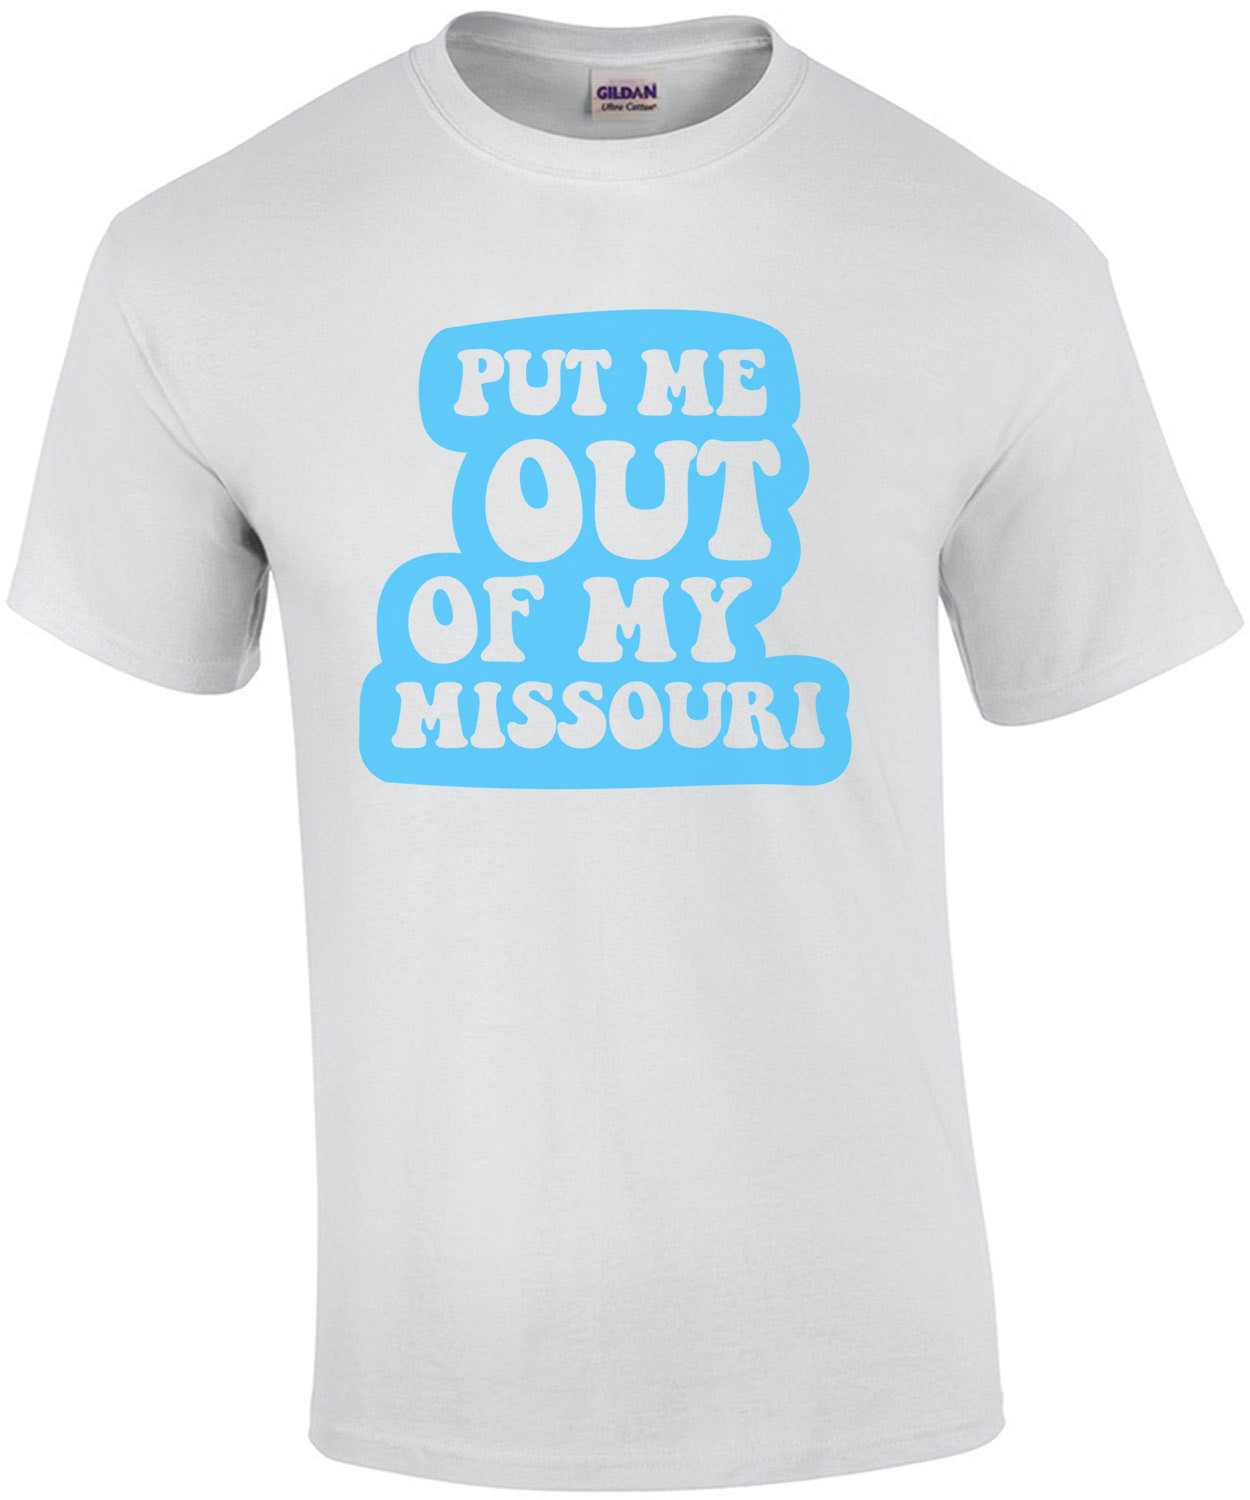 Put me out of my Missouri - Missouri T-Shirt